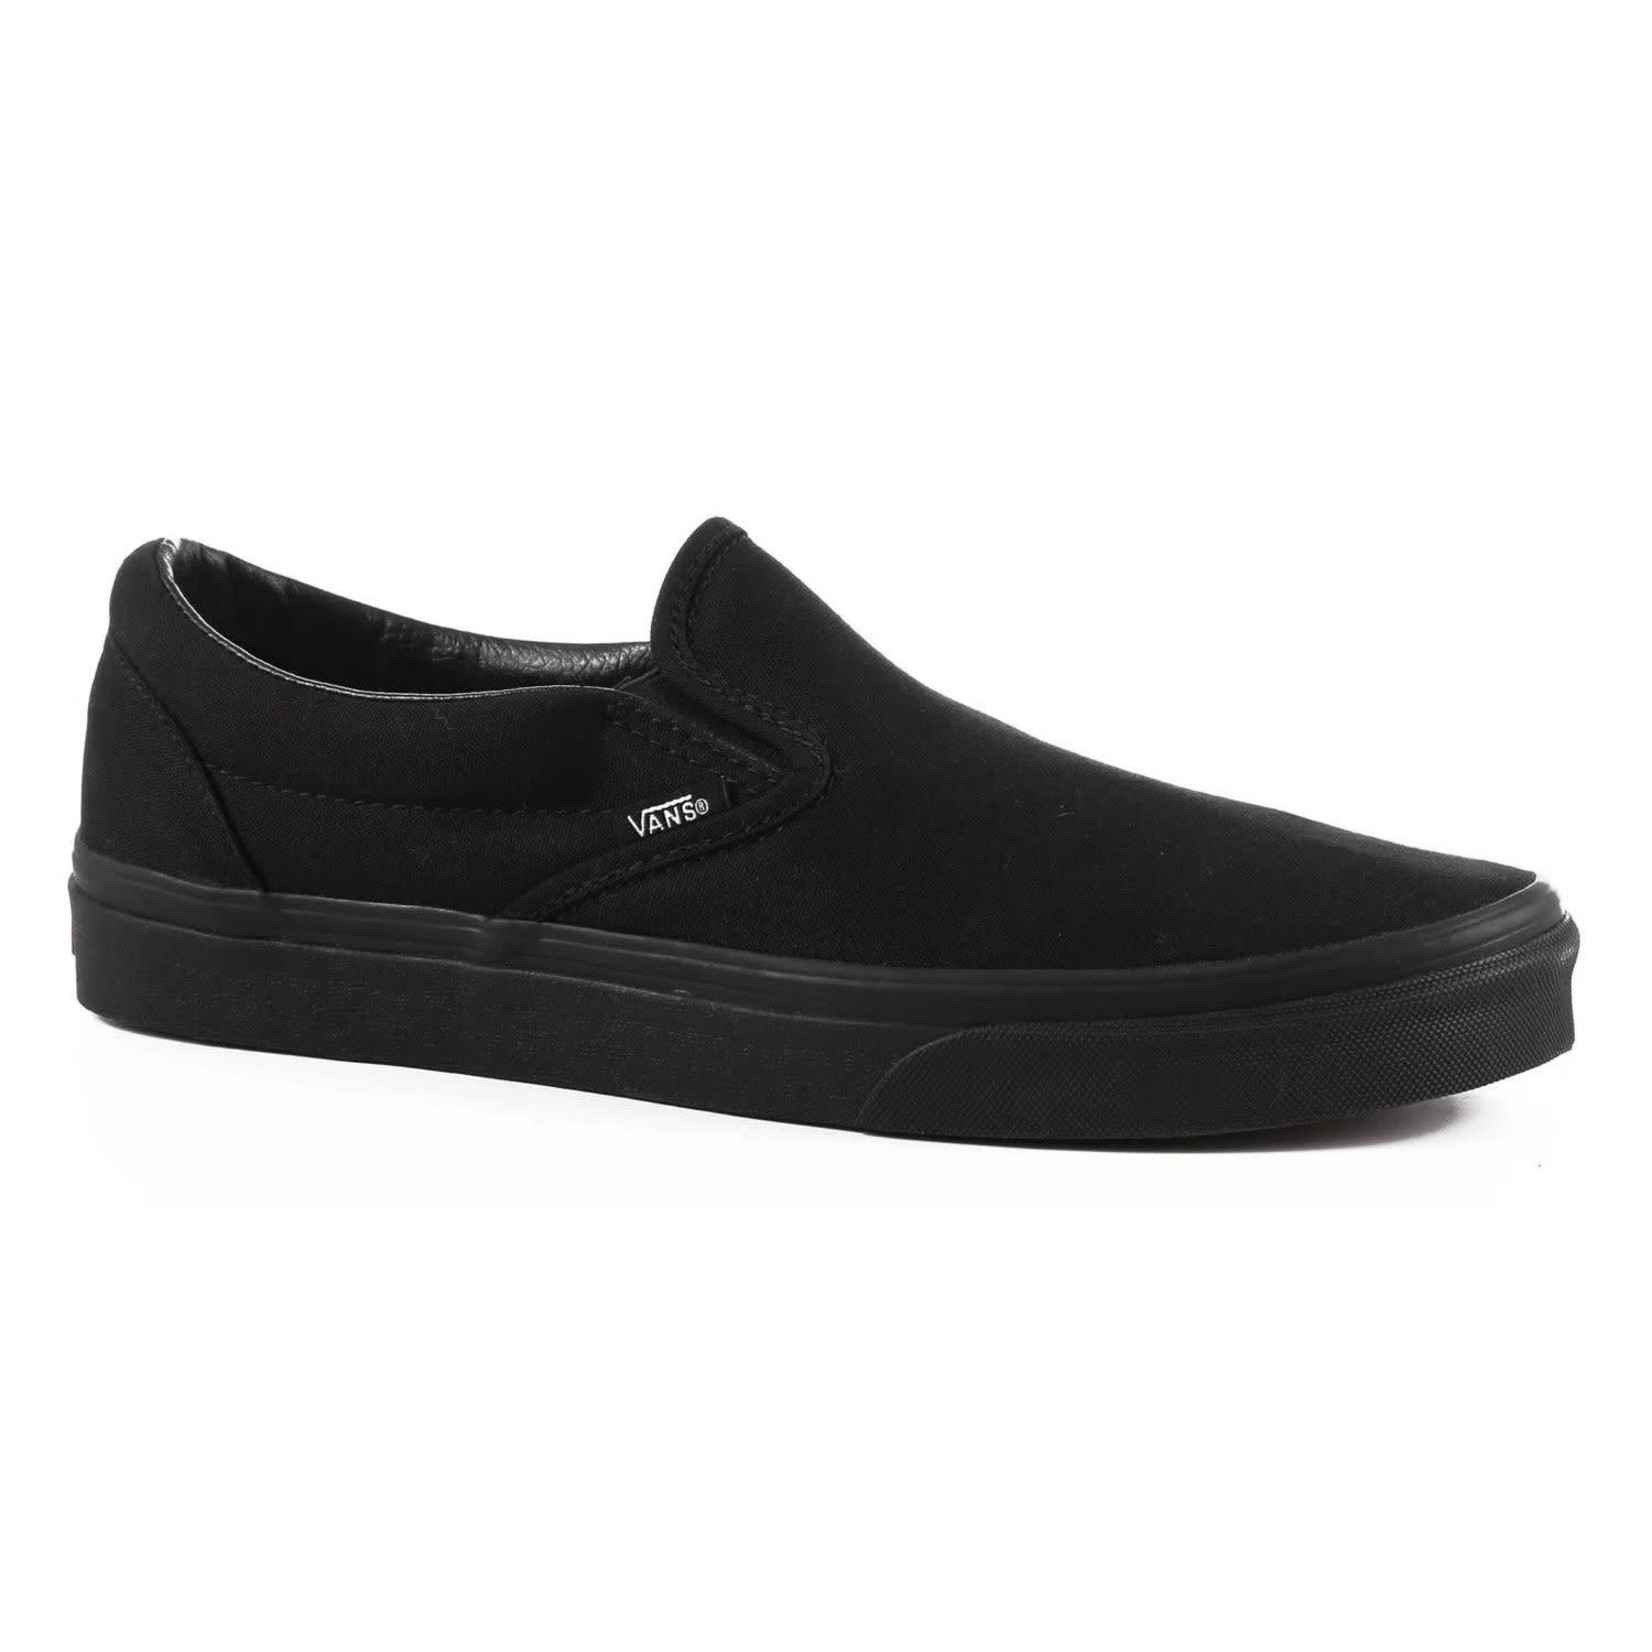 Vans Vans Classic Slip-On Men's Skate Shoes - Black/Black -